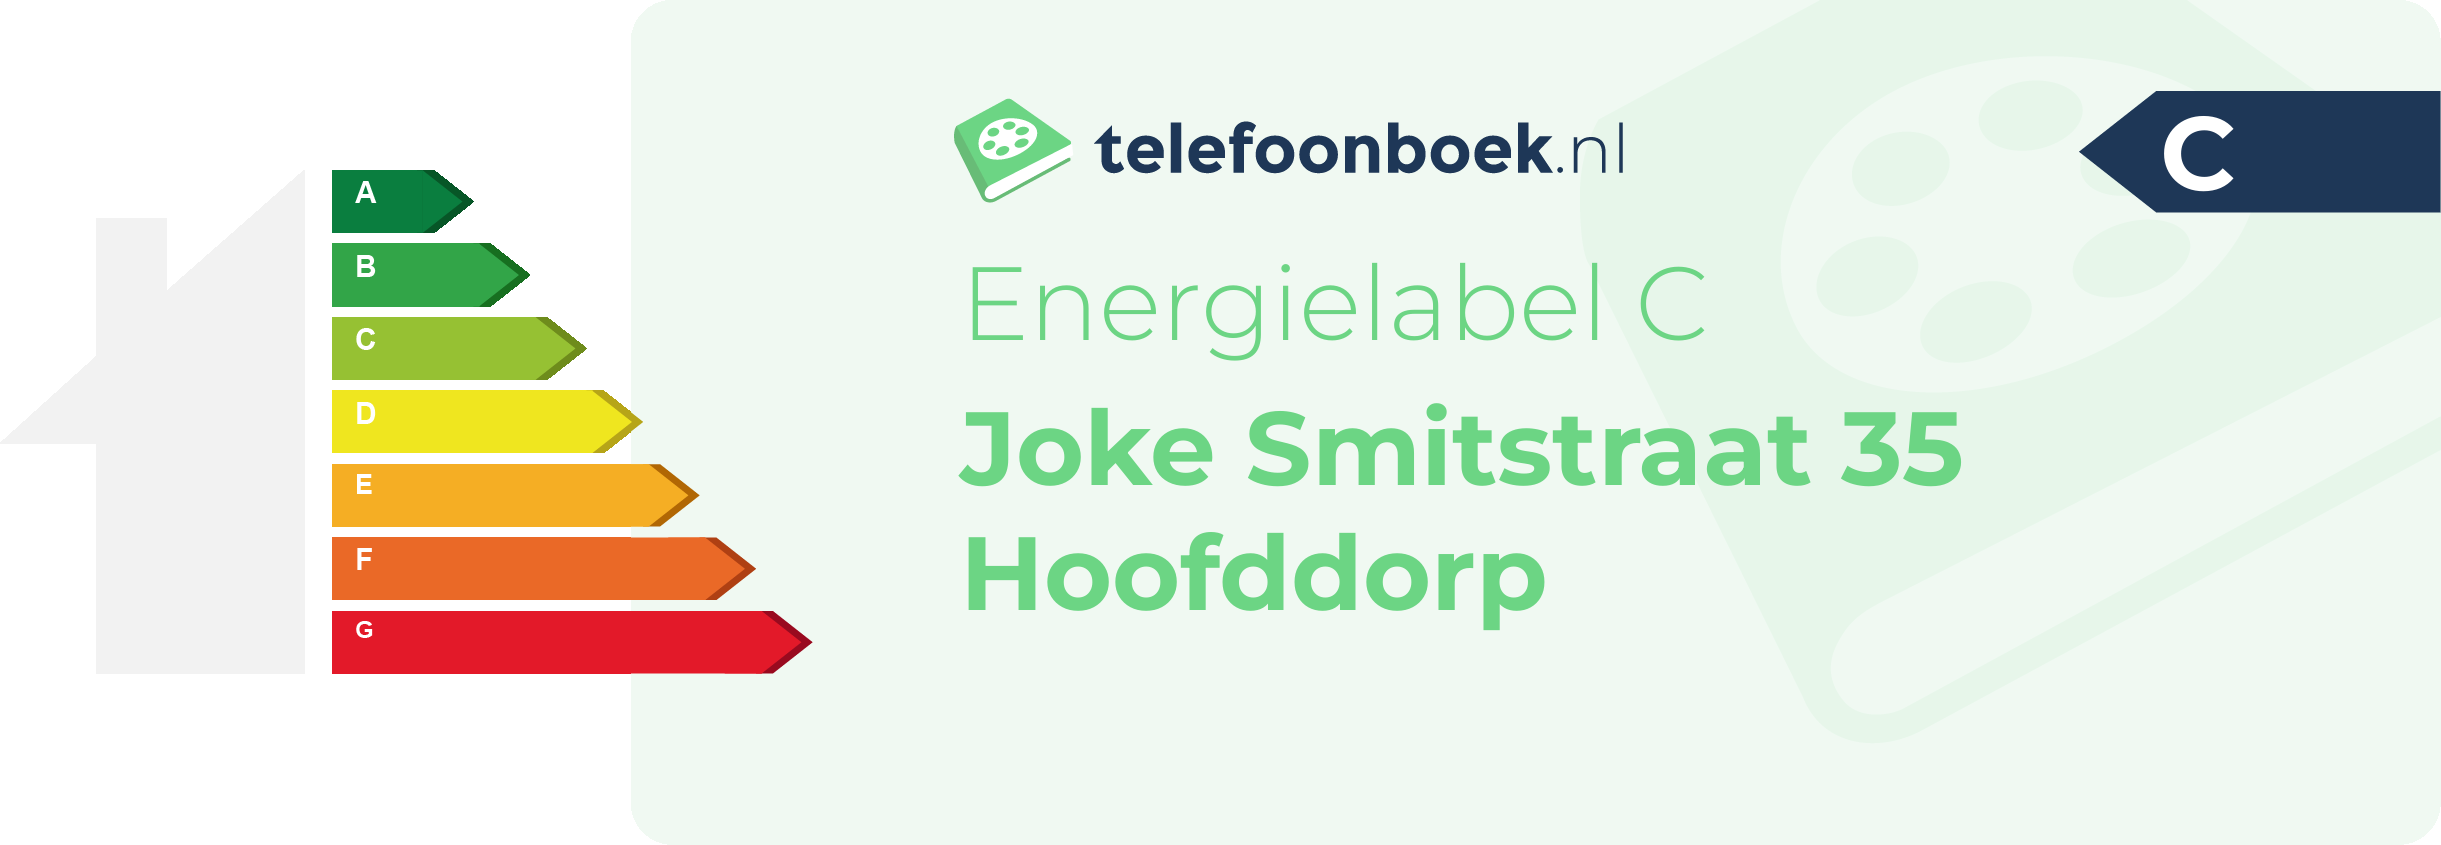 Energielabel Joke Smitstraat 35 Hoofddorp